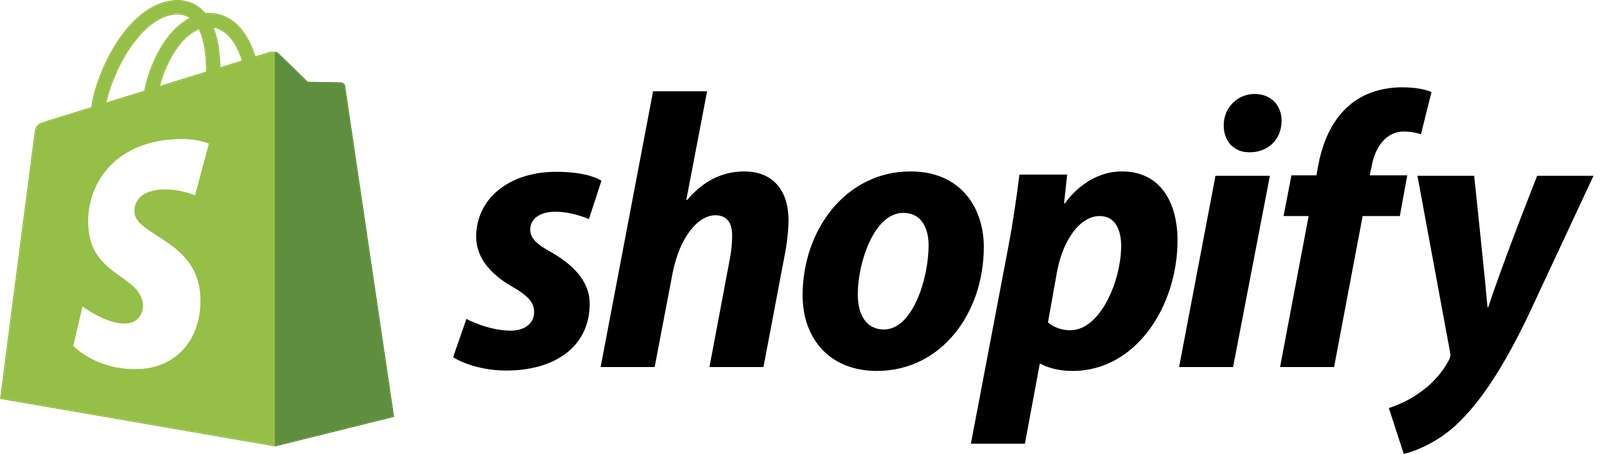 Shopify_logo_2018.svg (1)